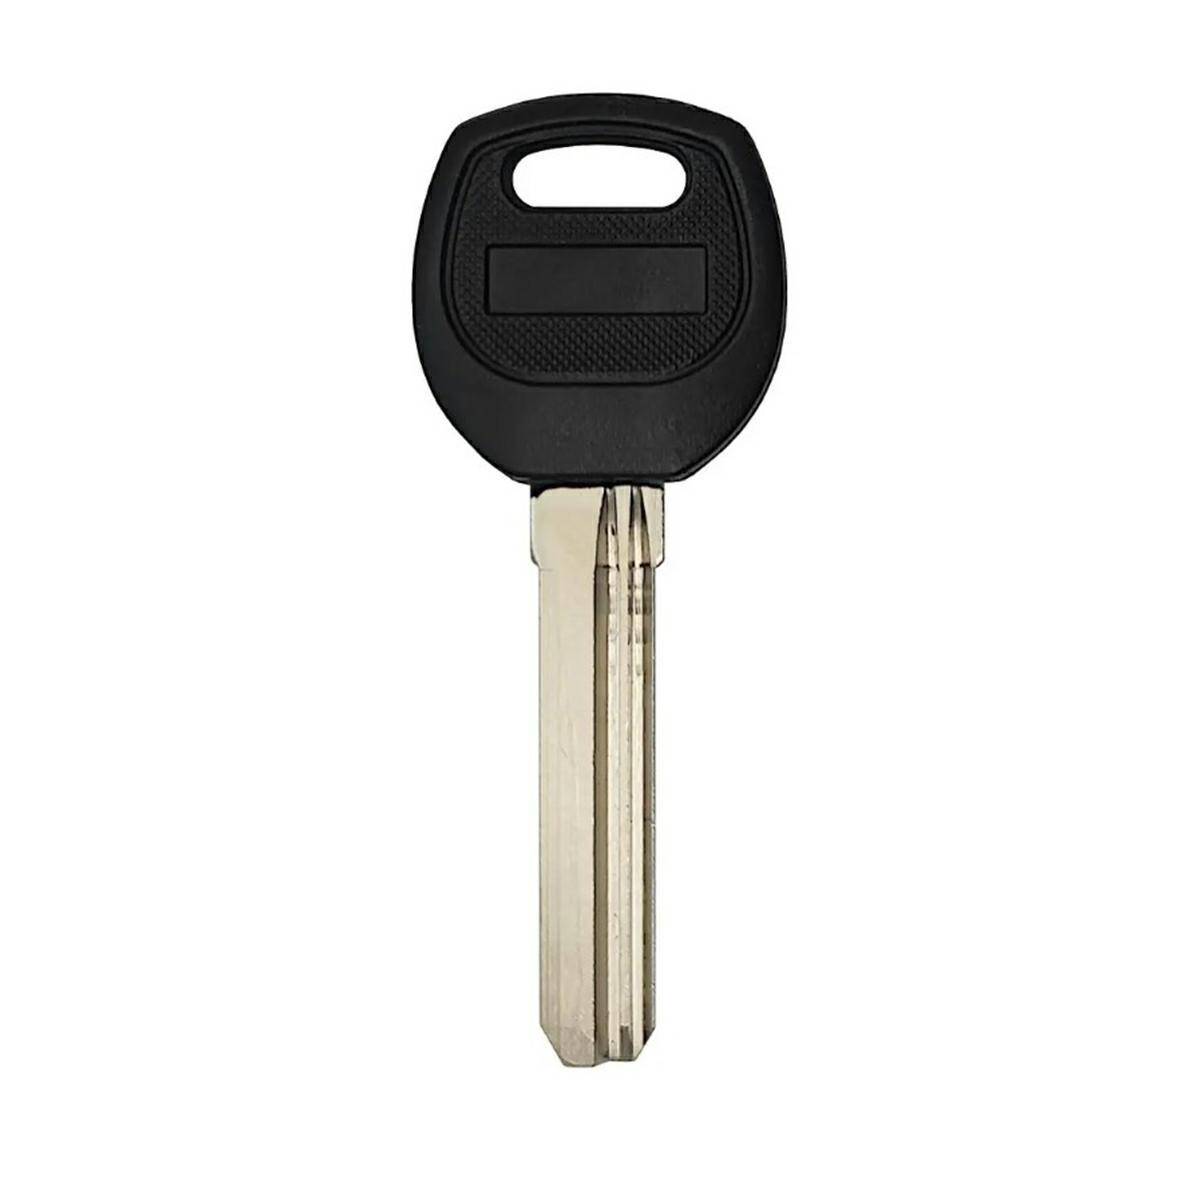 Chinese key 37mm x 8,8mm x 2,2mm